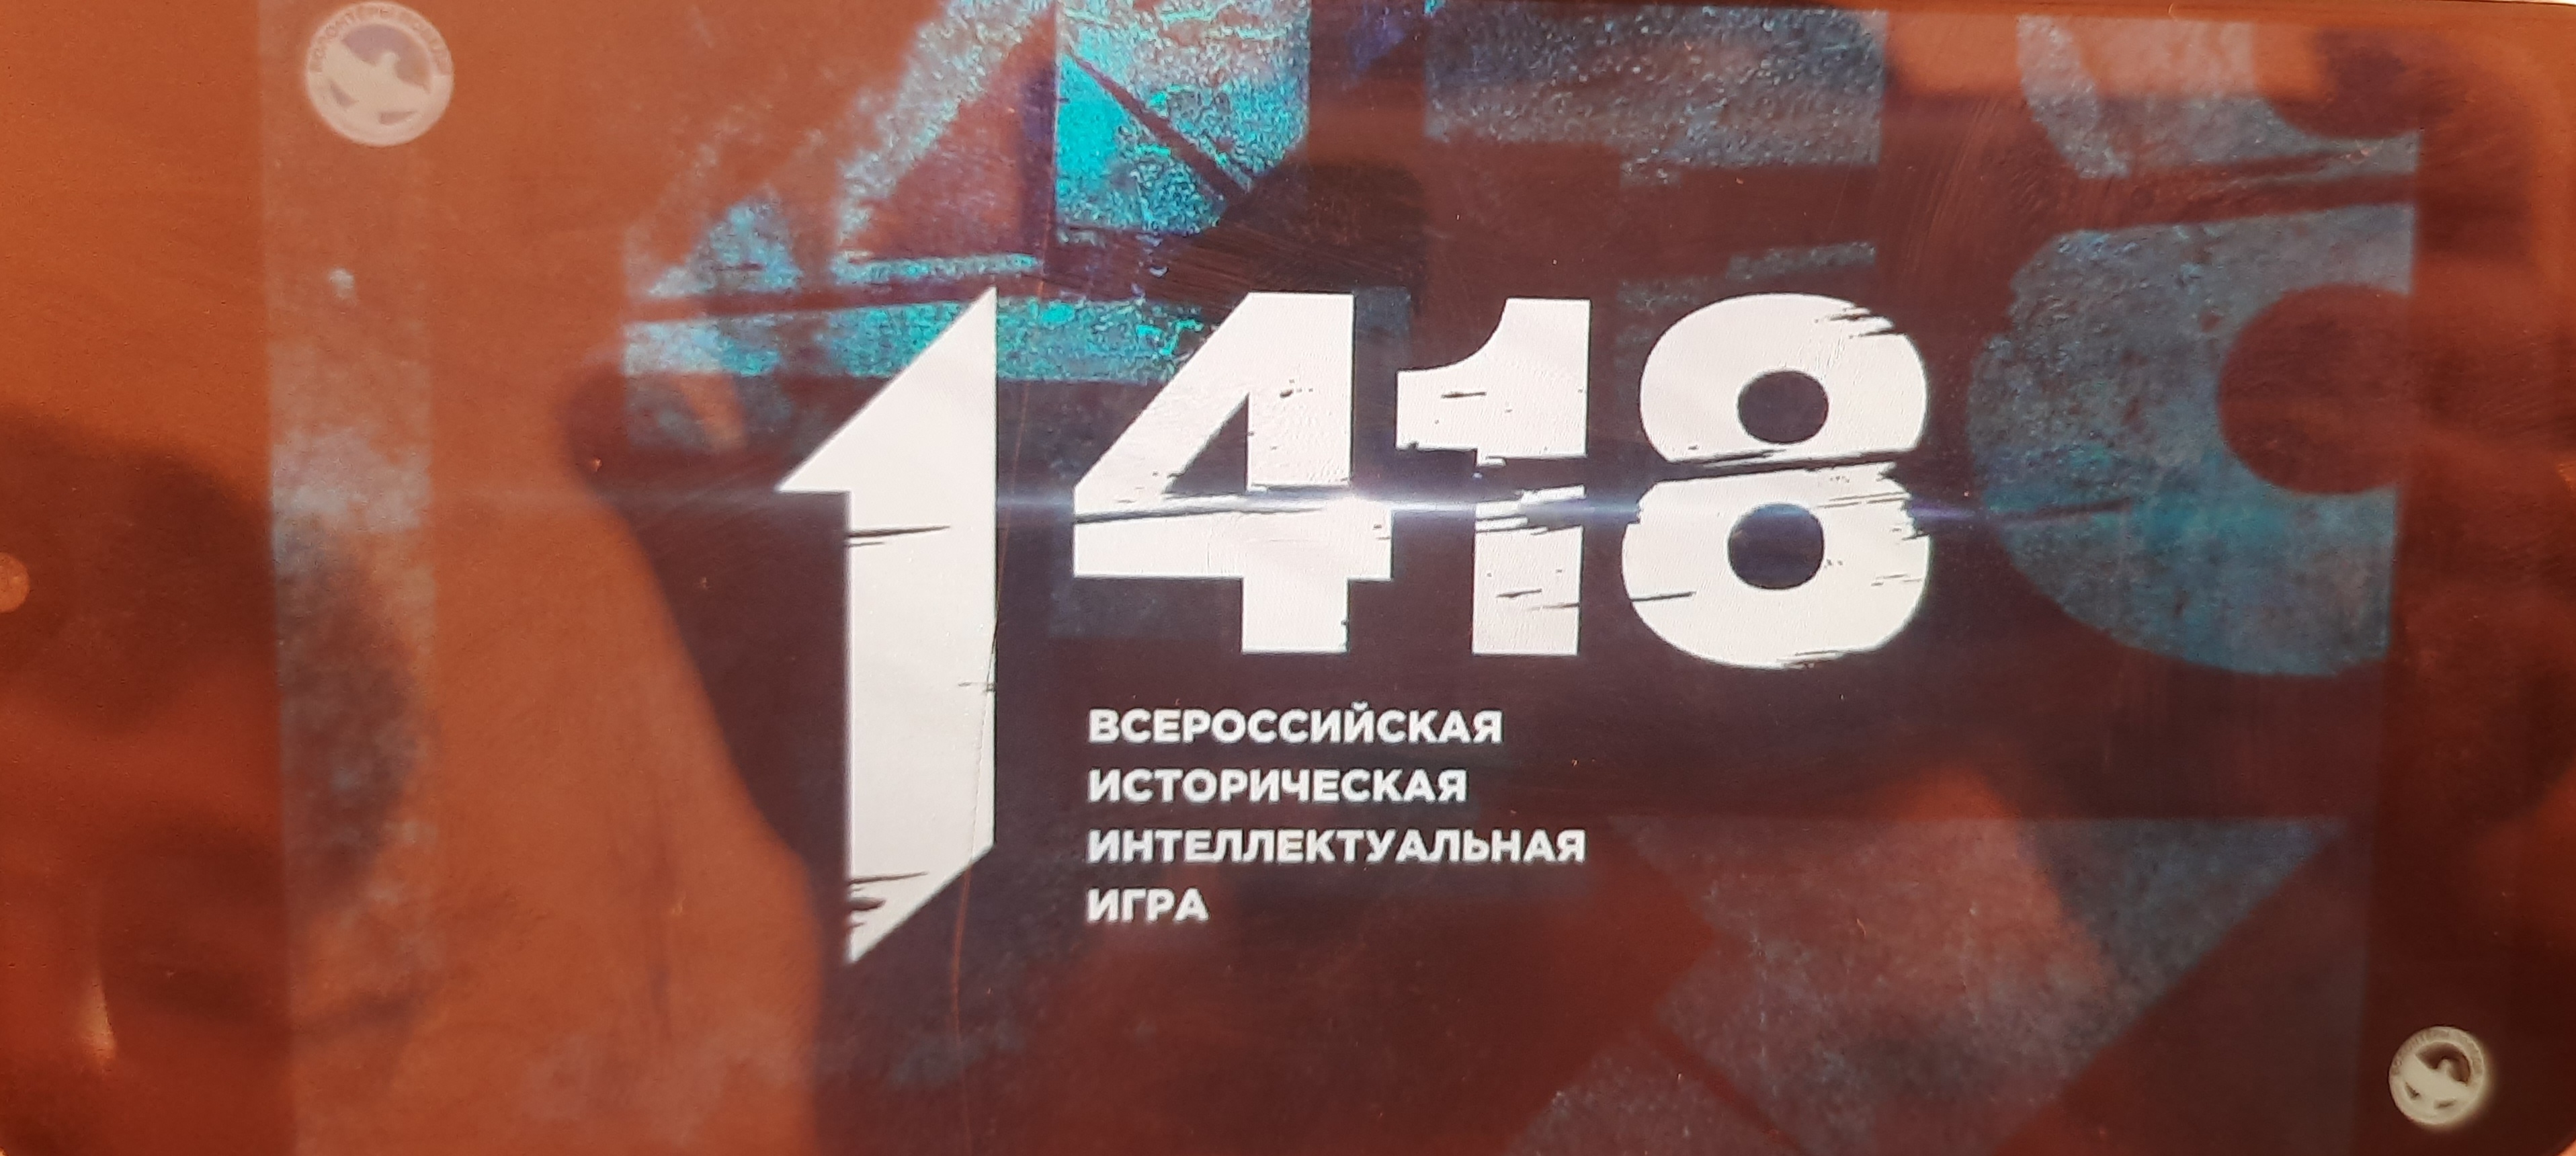 Участие во всероссийской интеллектуальной игре «1418».